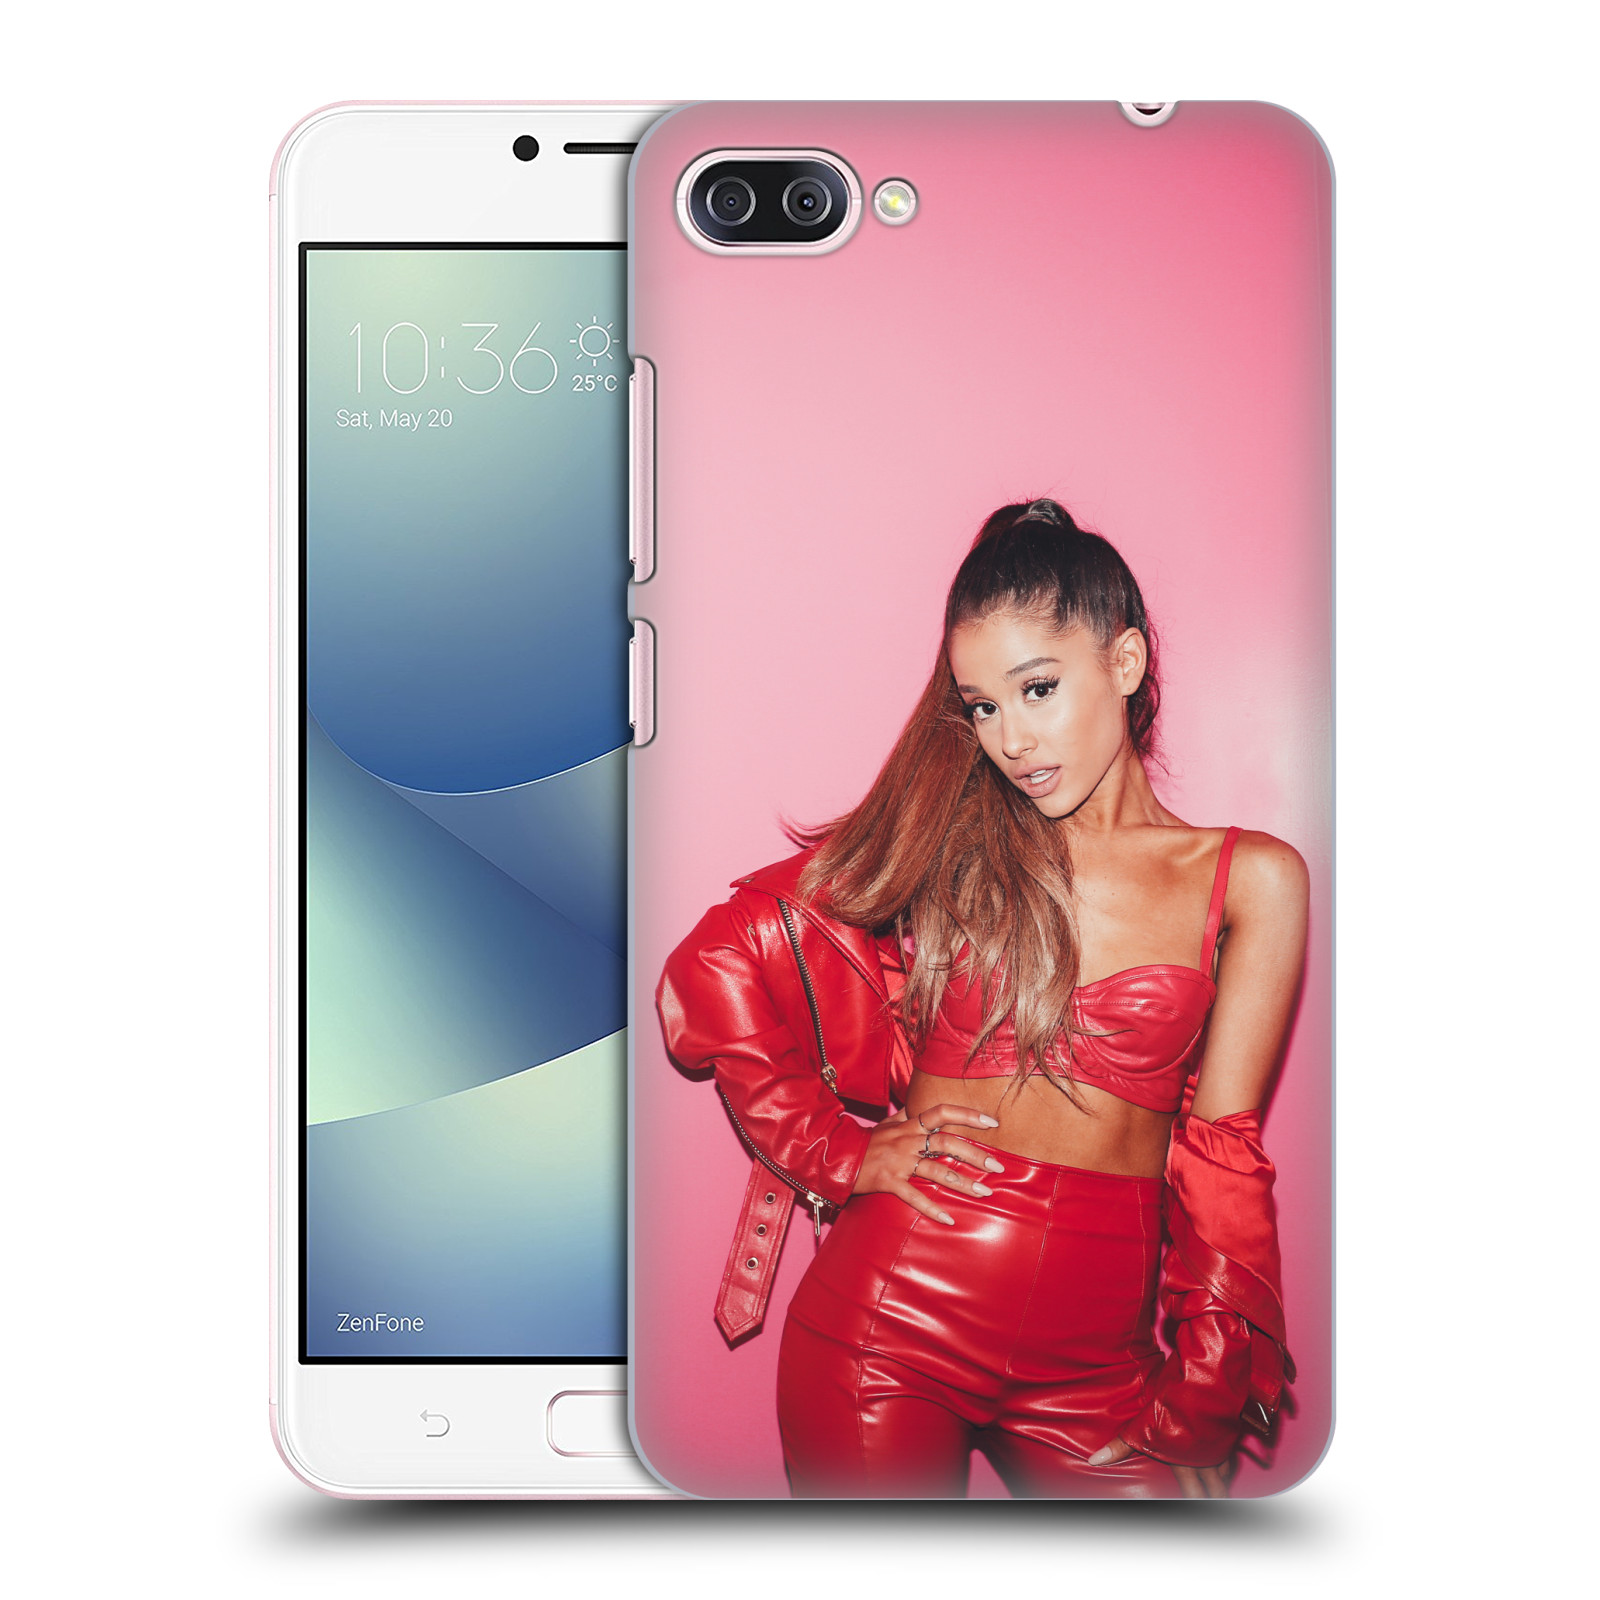 Zadní obal pro mobil Asus Zenfone 4 MAX / 4 MAX PRO (ZC554KL) - HEAD CASE - Zpěvačka Ariana Grande růžové pozadí